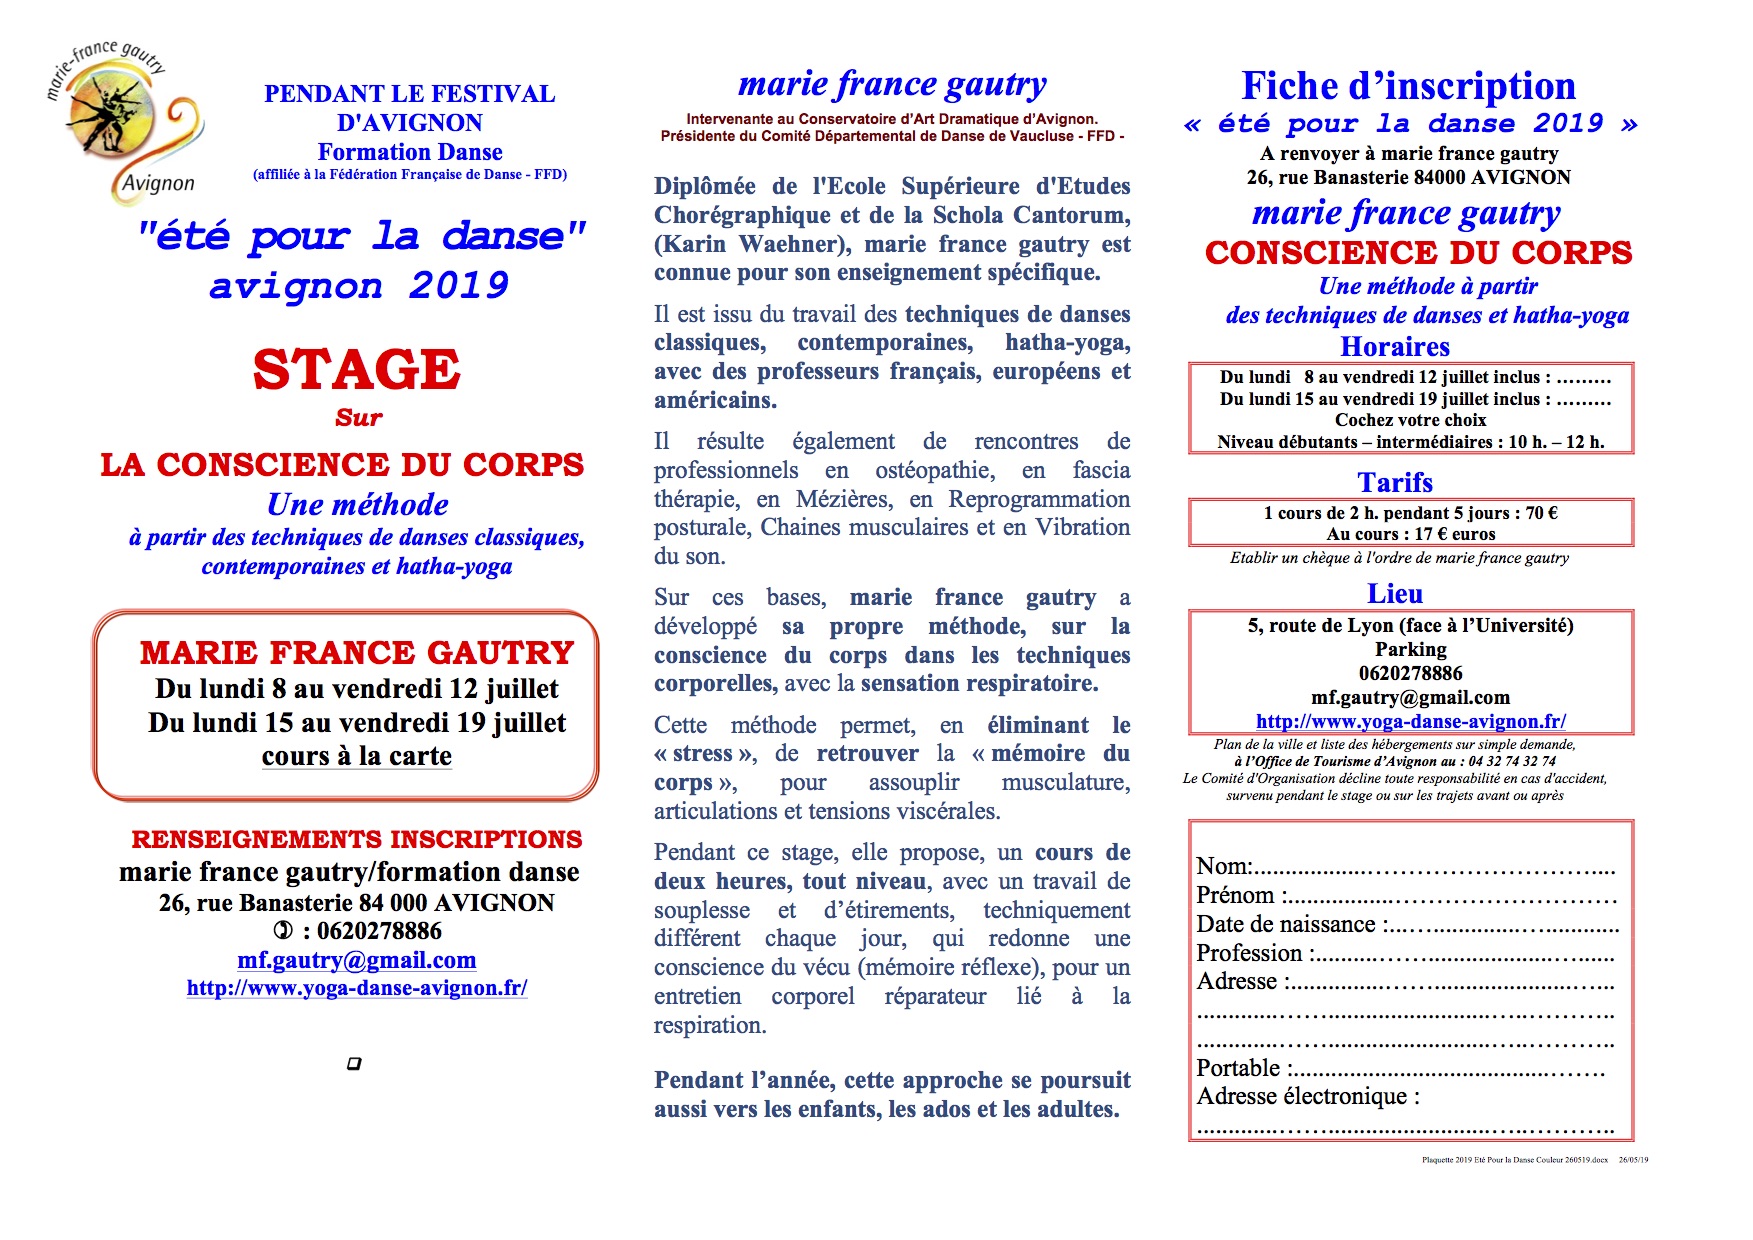 Microsoft Word Plaquette 2019 Ete Pour la Danse Couleur 260519.docx